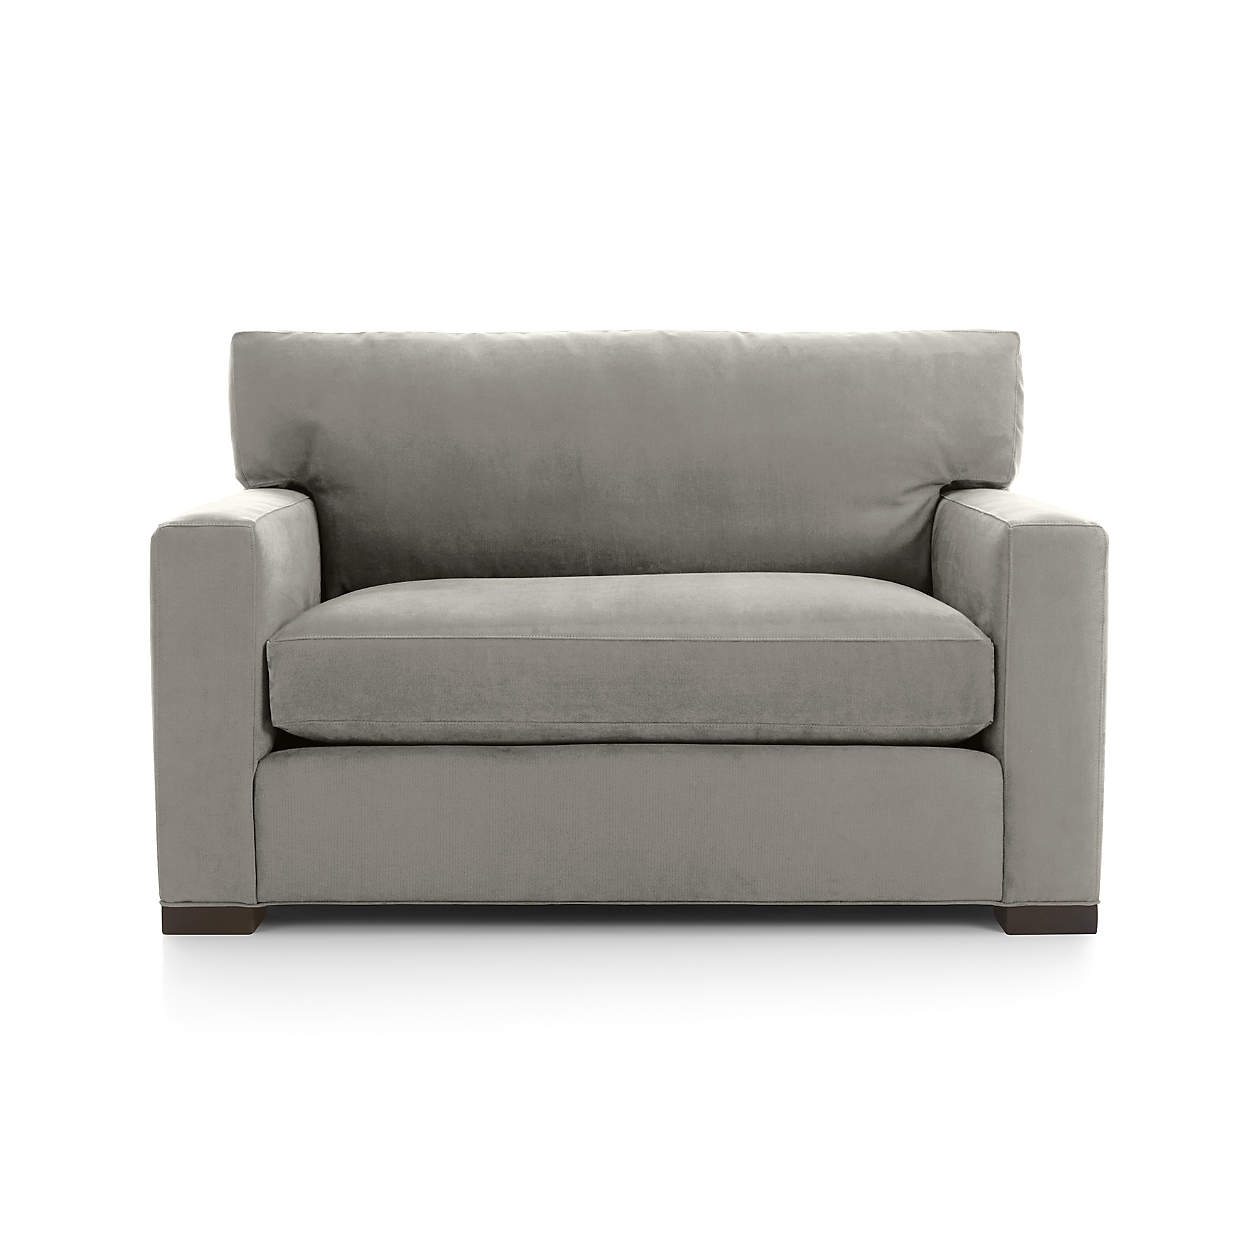 Axis Twin Sleeper Sofa - Image 5